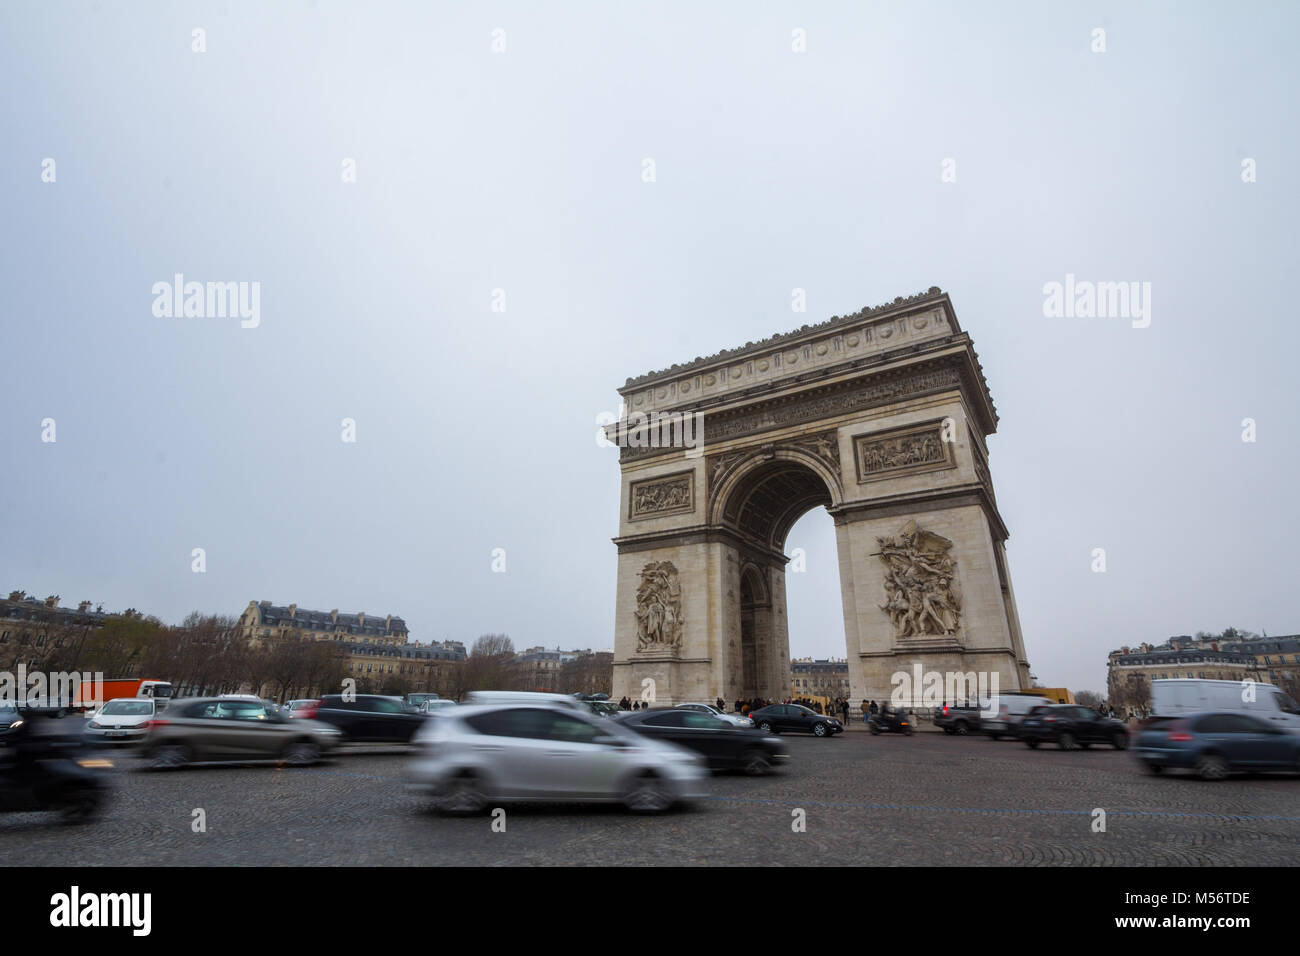 Parigi, Francia - 19 dicembre 2017: Arc de Triomphe (Arco di Trionfo) sulla place de l'Etoile con un ingorgo di auto di fronte. La piazza e l'arco ar Foto Stock